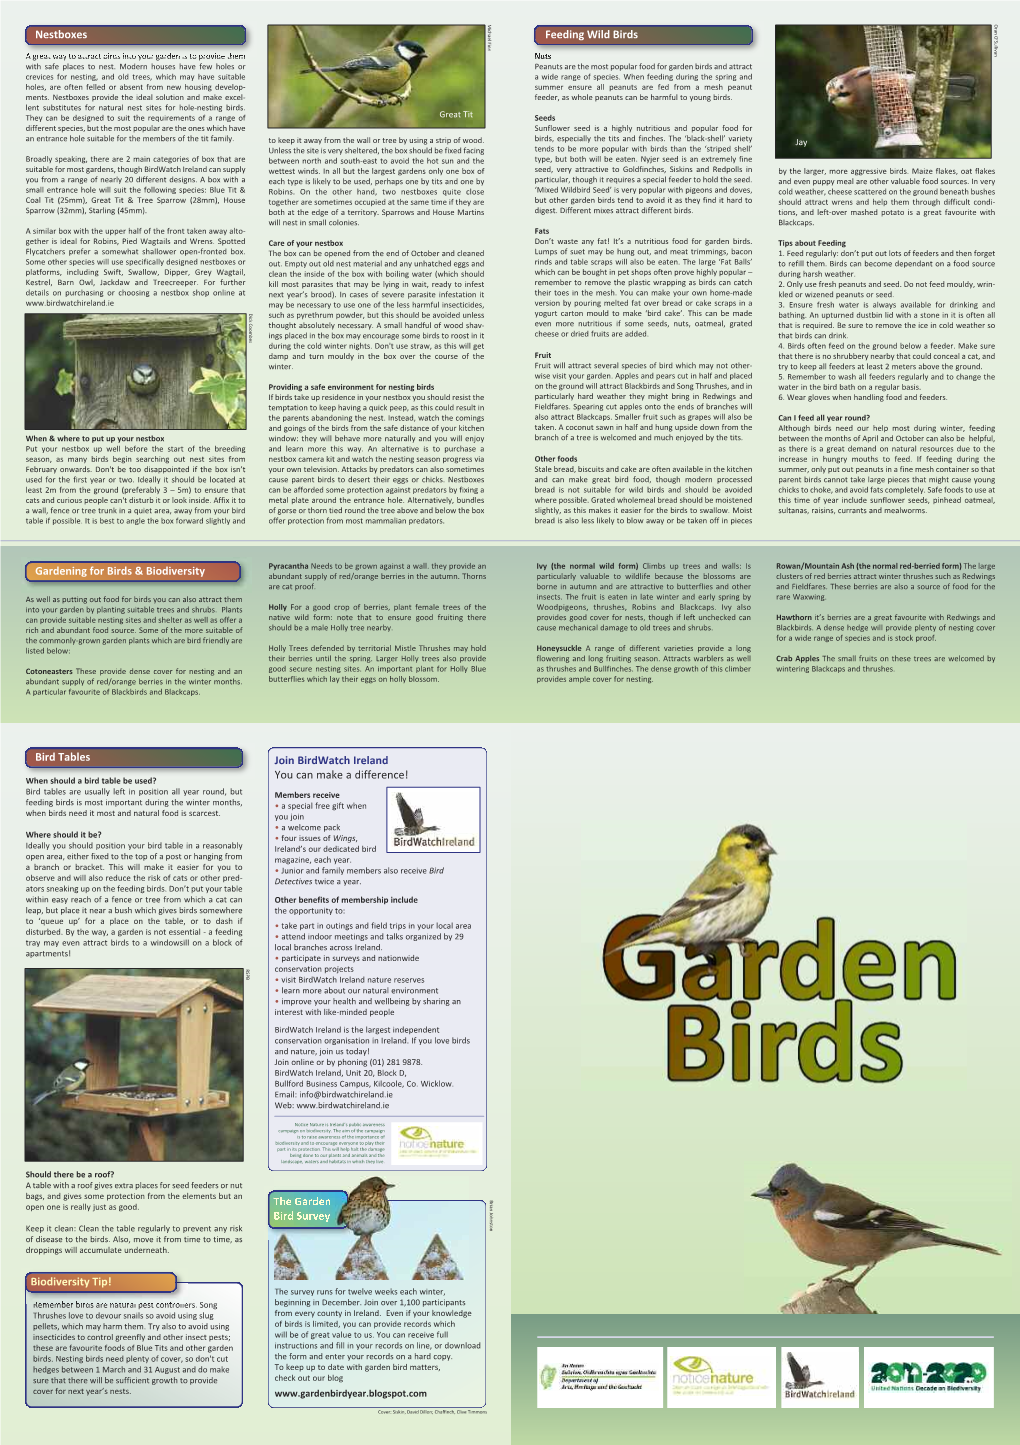 Bird Tables Biodiversity Tip! the Garden Bird Survey Nestboxes